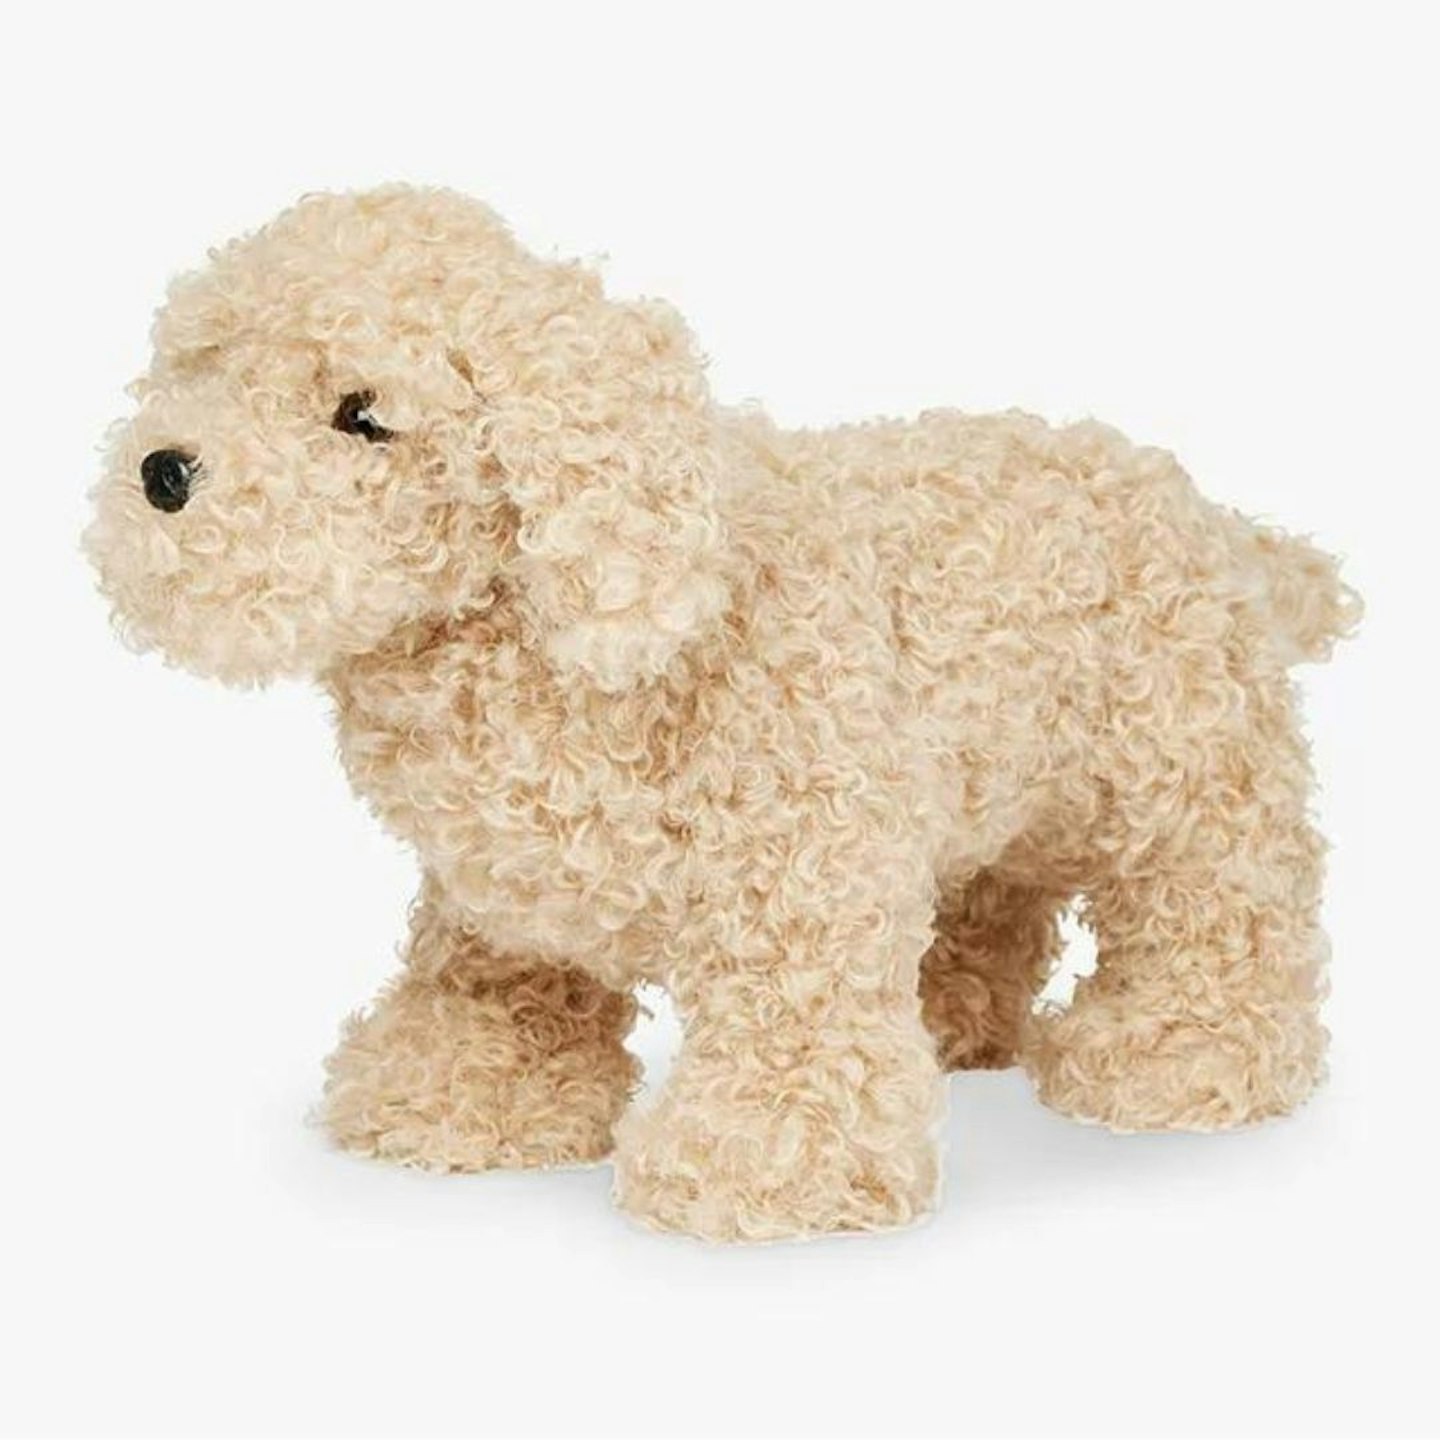 The Top Ten John Lewis Christmas Toys: LeMieux Cockapoo Puppy Plush Soft Toy